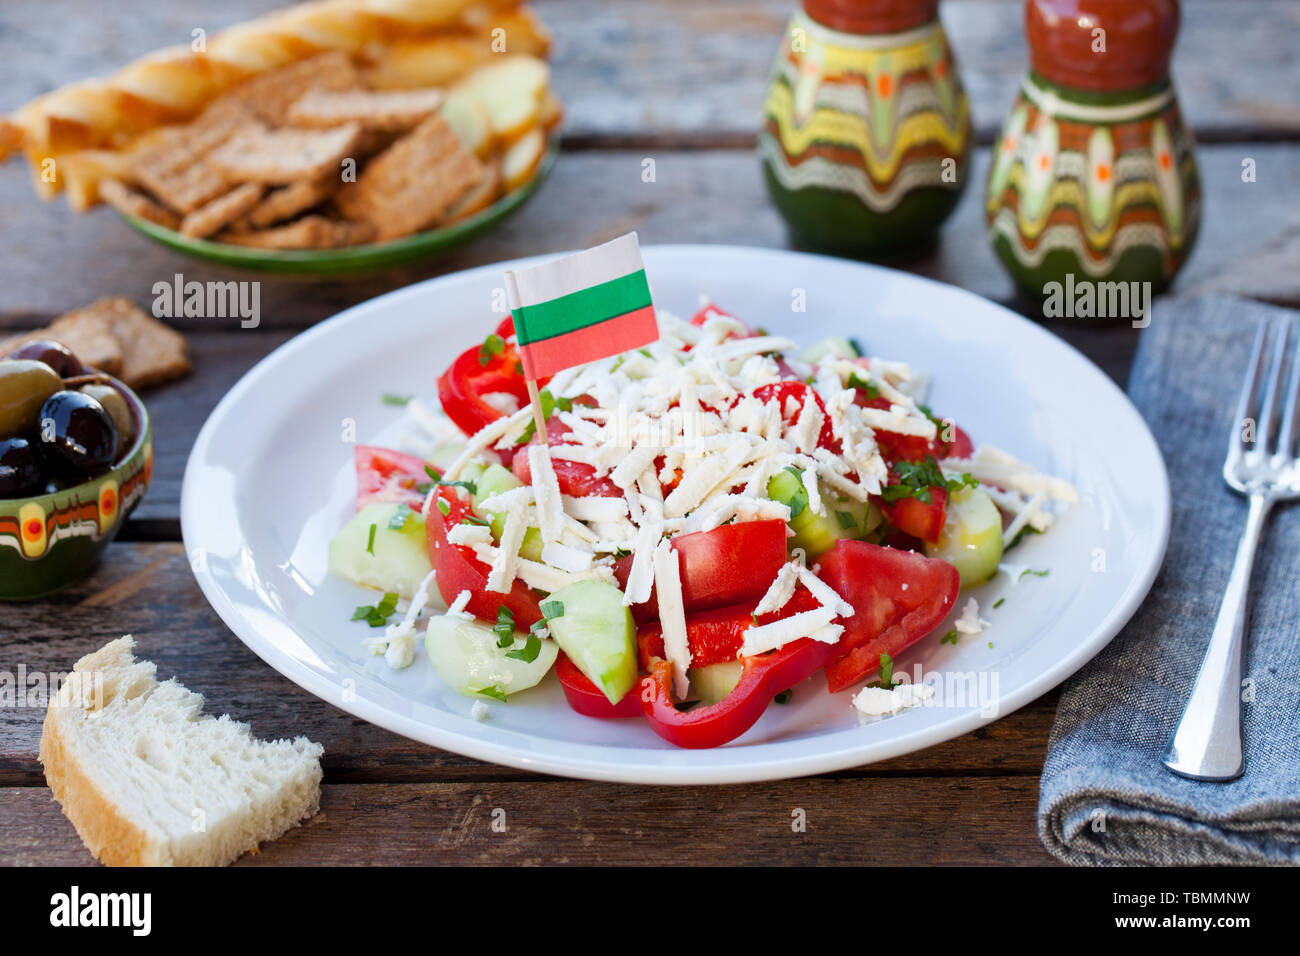 Légumes salade shopska bulgare avec la Bulgarie drapeau. Fond de bois Banque D'Images